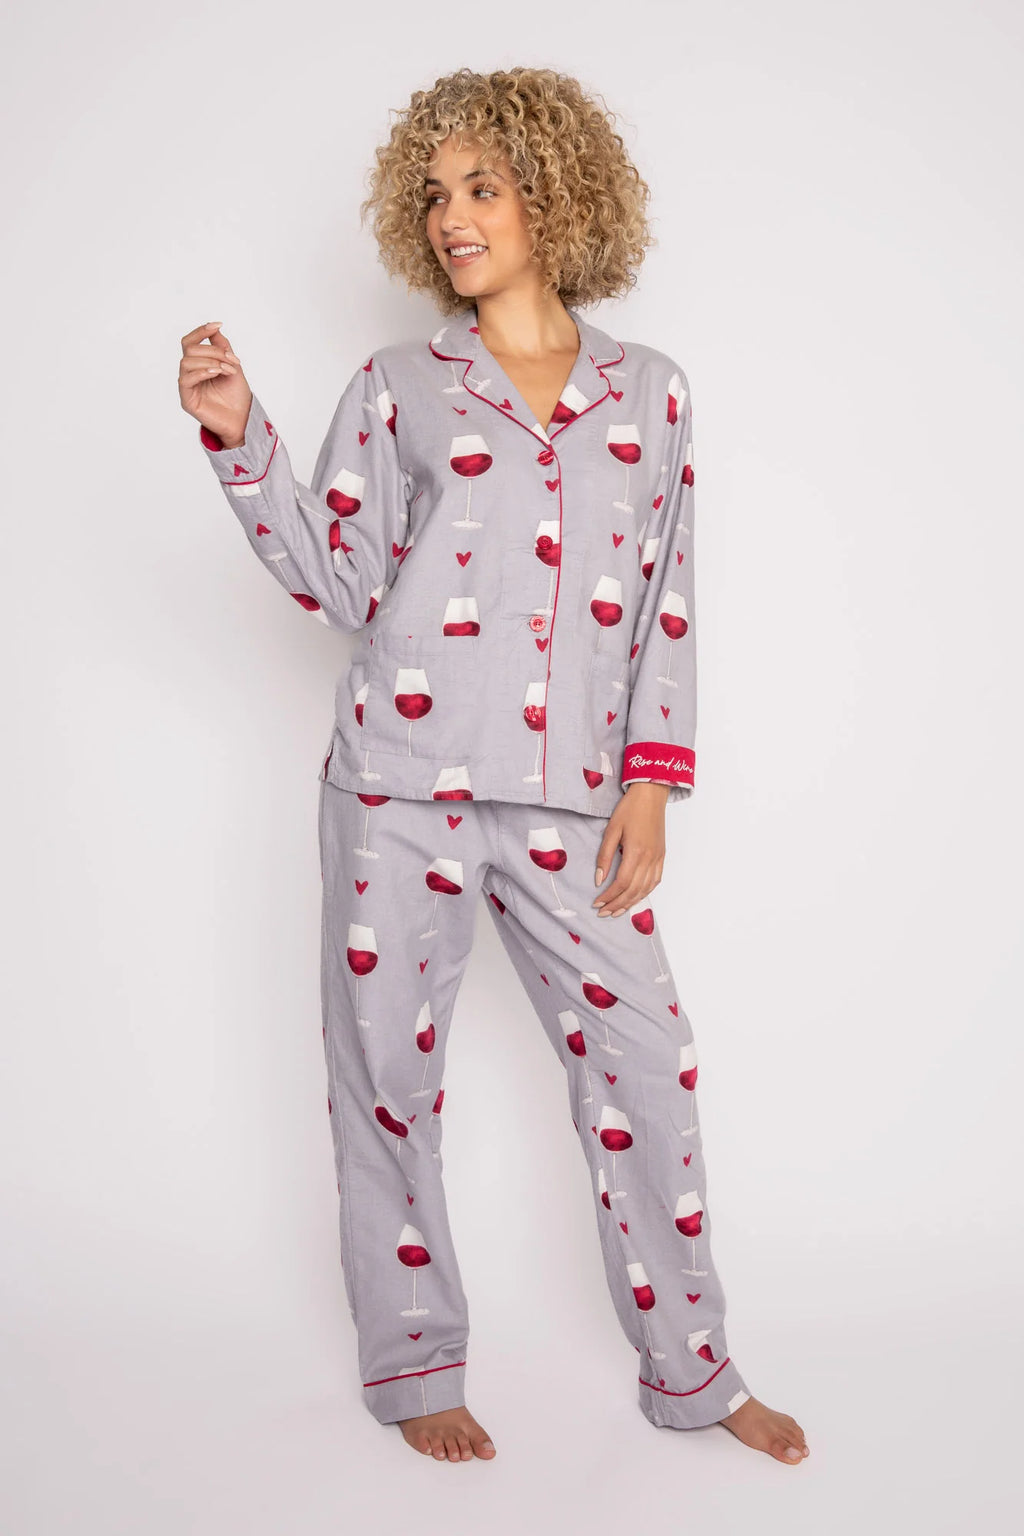 Poutine Pajama Pants – Life's Little Pleasures Boutique